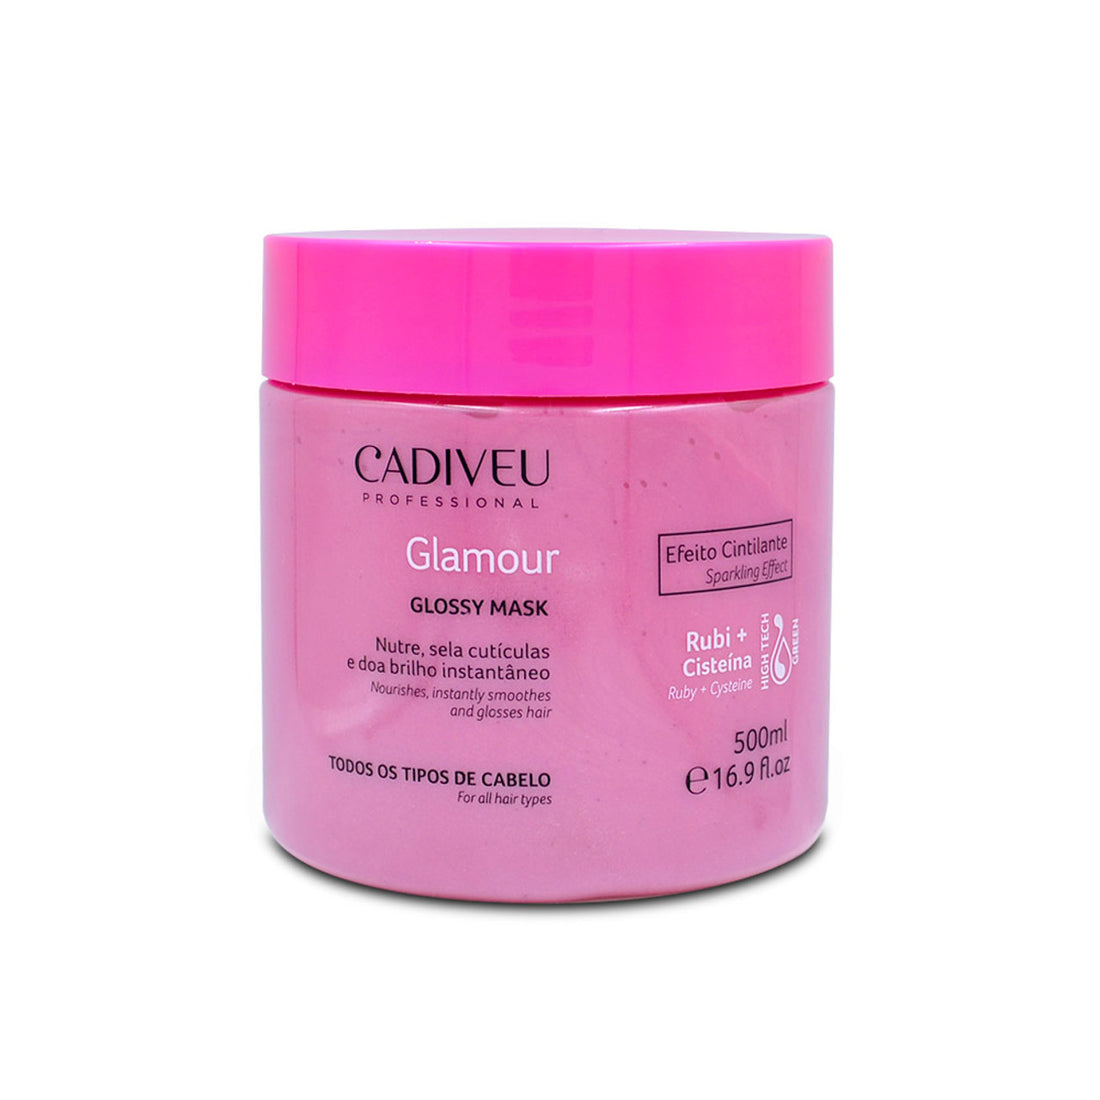 Cadiveu, Glamour Glossy, Masque capillaire pour cheveux, 500g/ /16.9 fl.oz